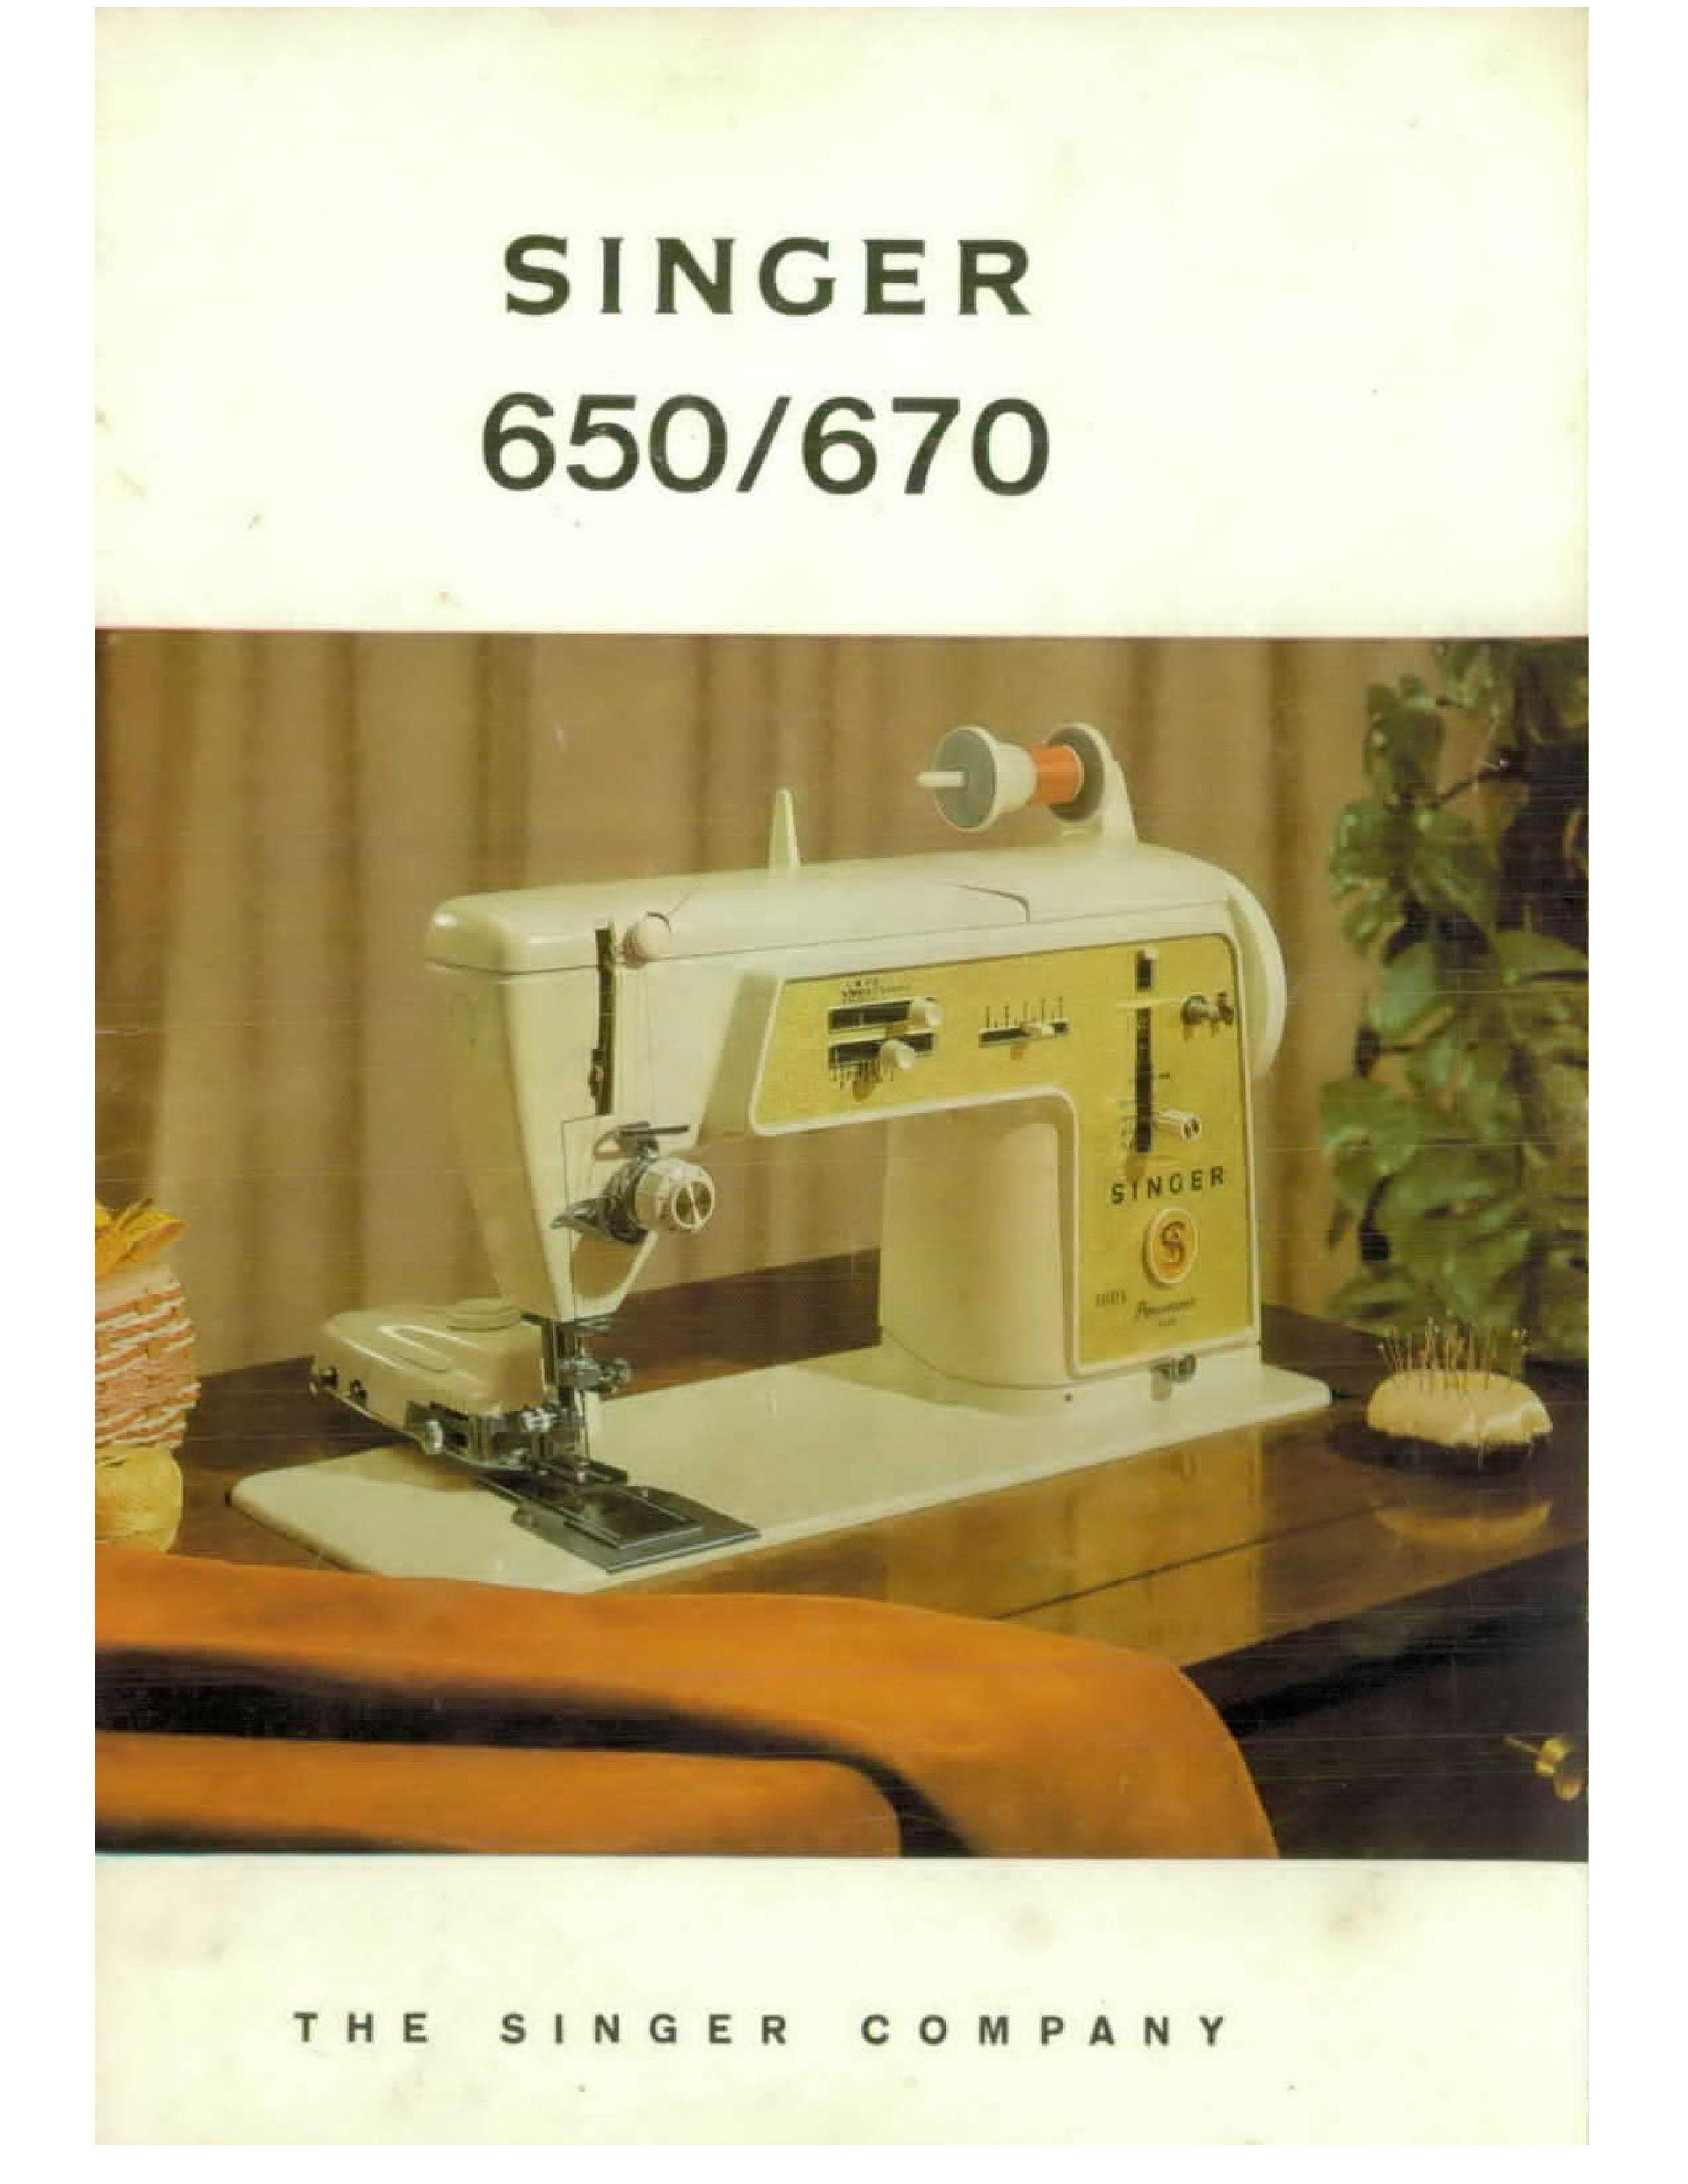 670 650. Singer 650g. Зингер. Singer 670g. Зингер Панорамик швейная машина.